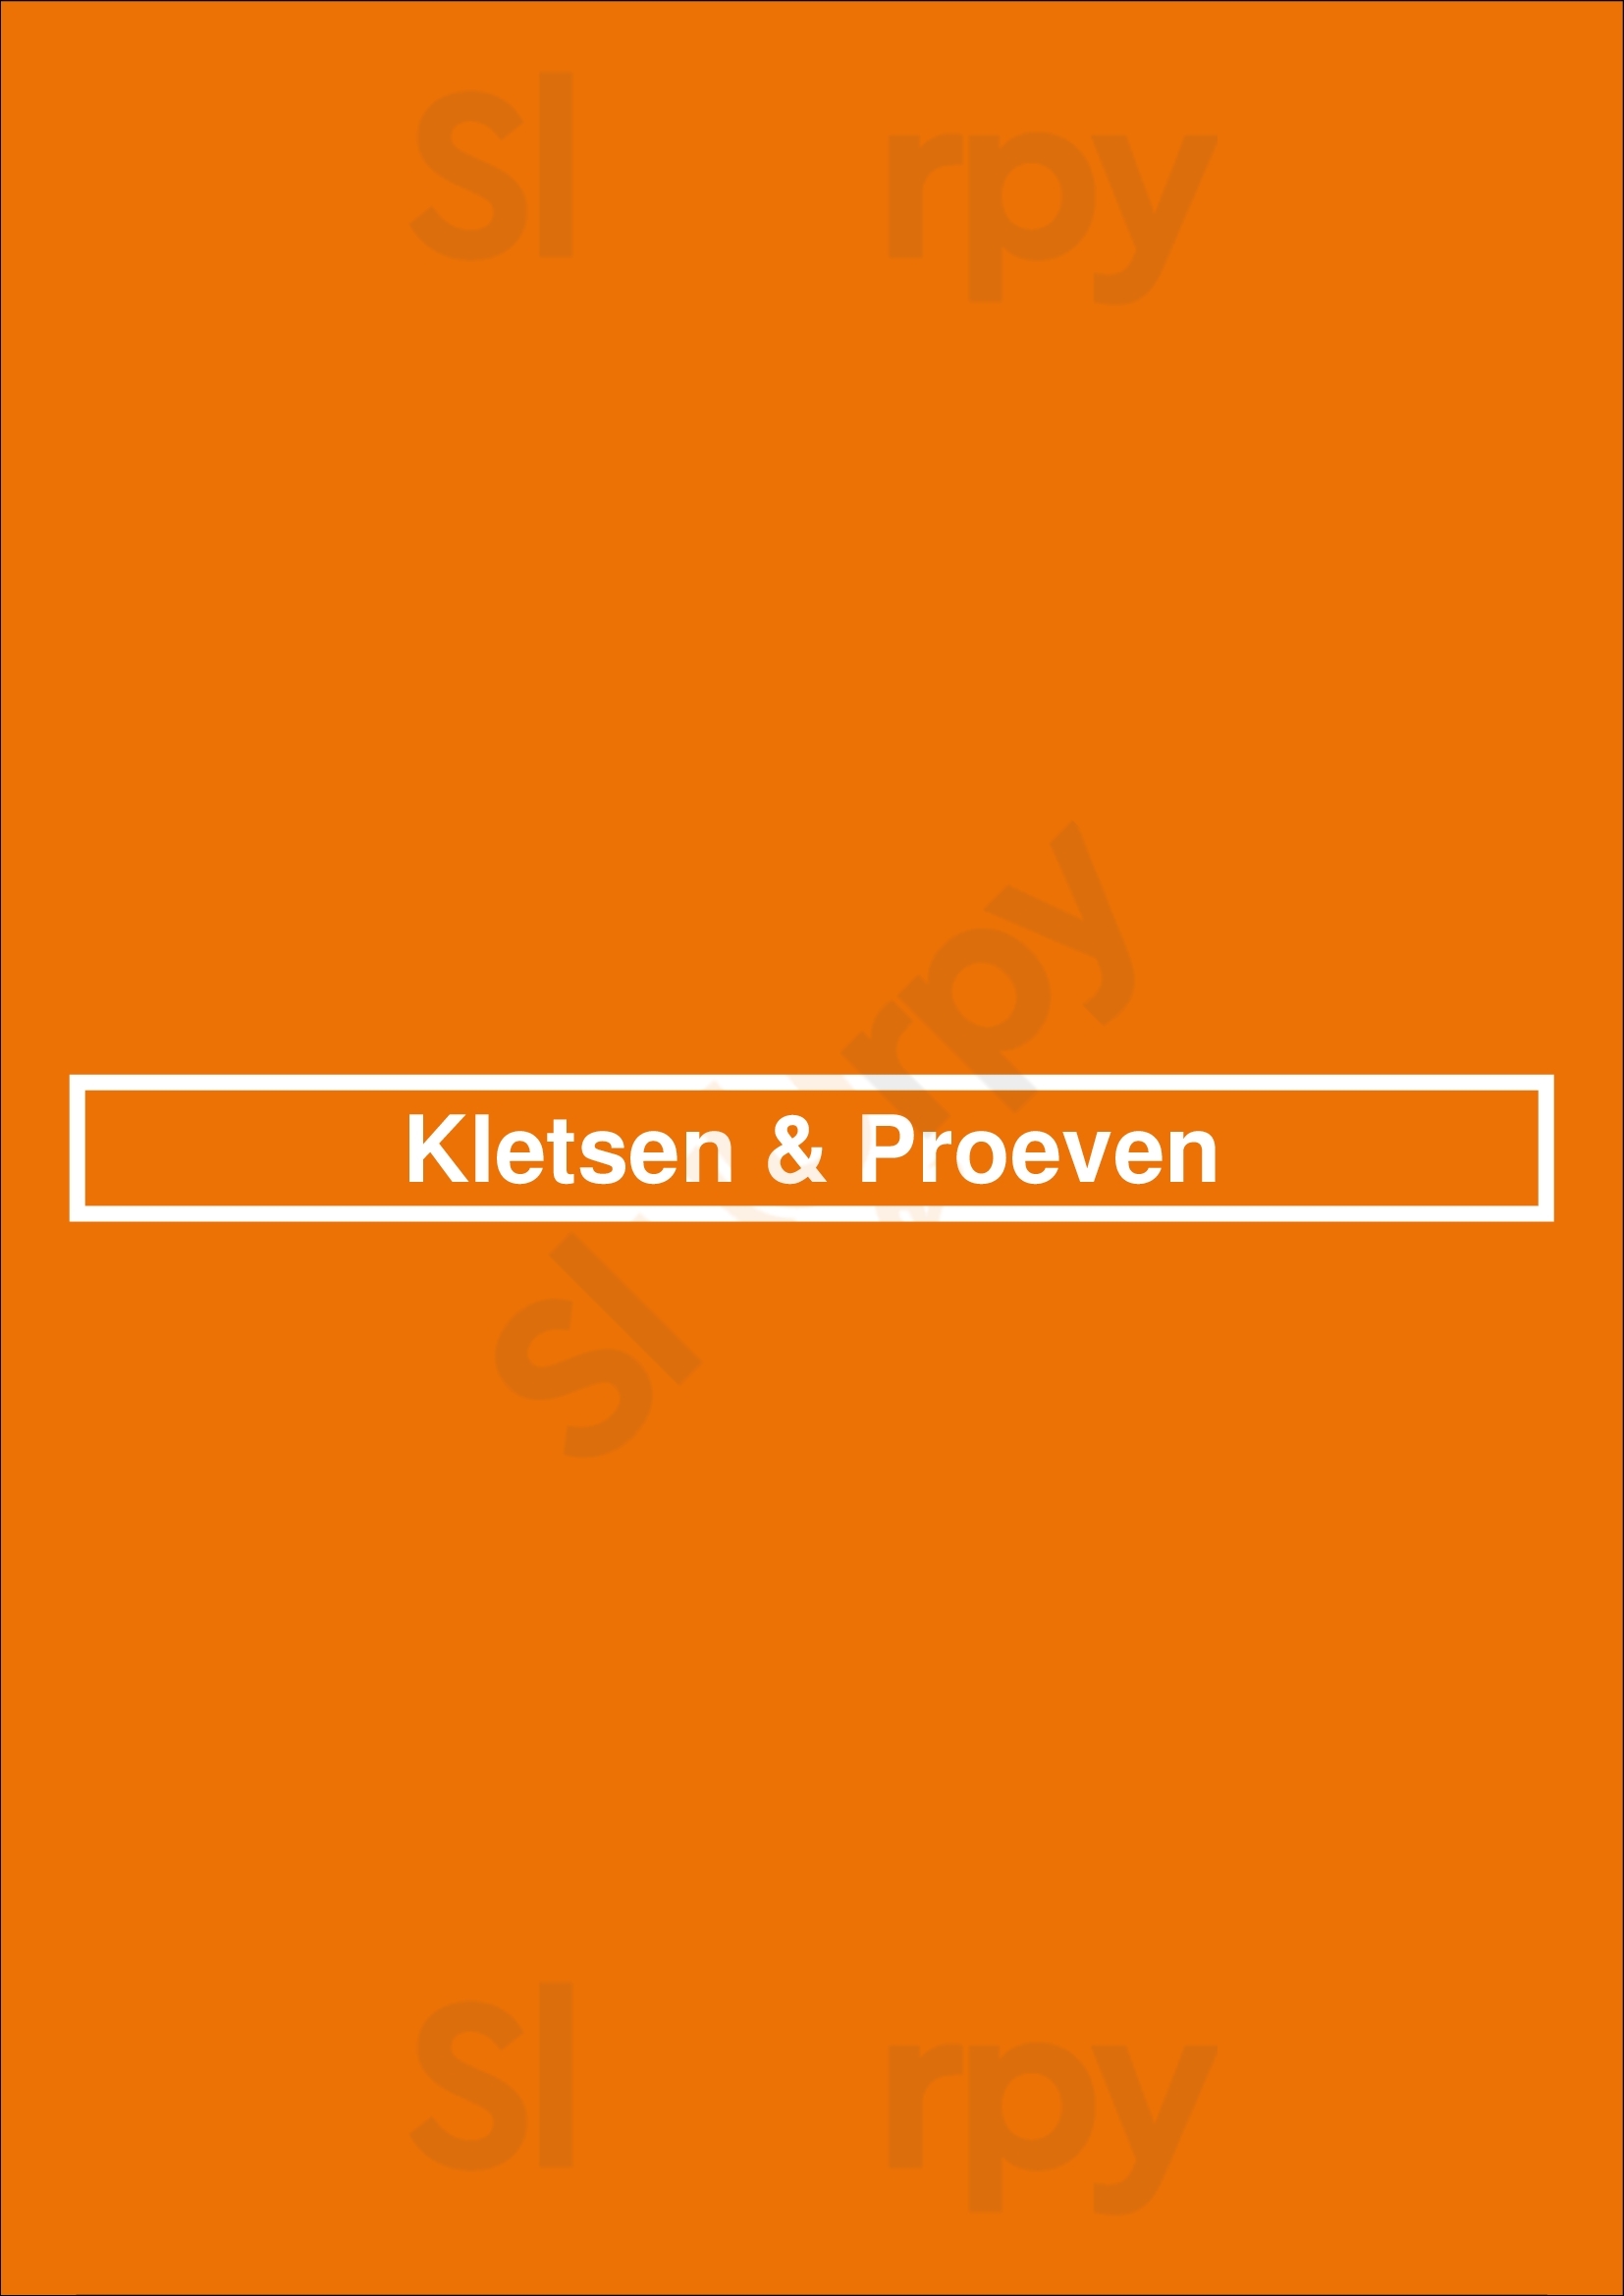 Kletsen & Proeven Zwolle Menu - 1